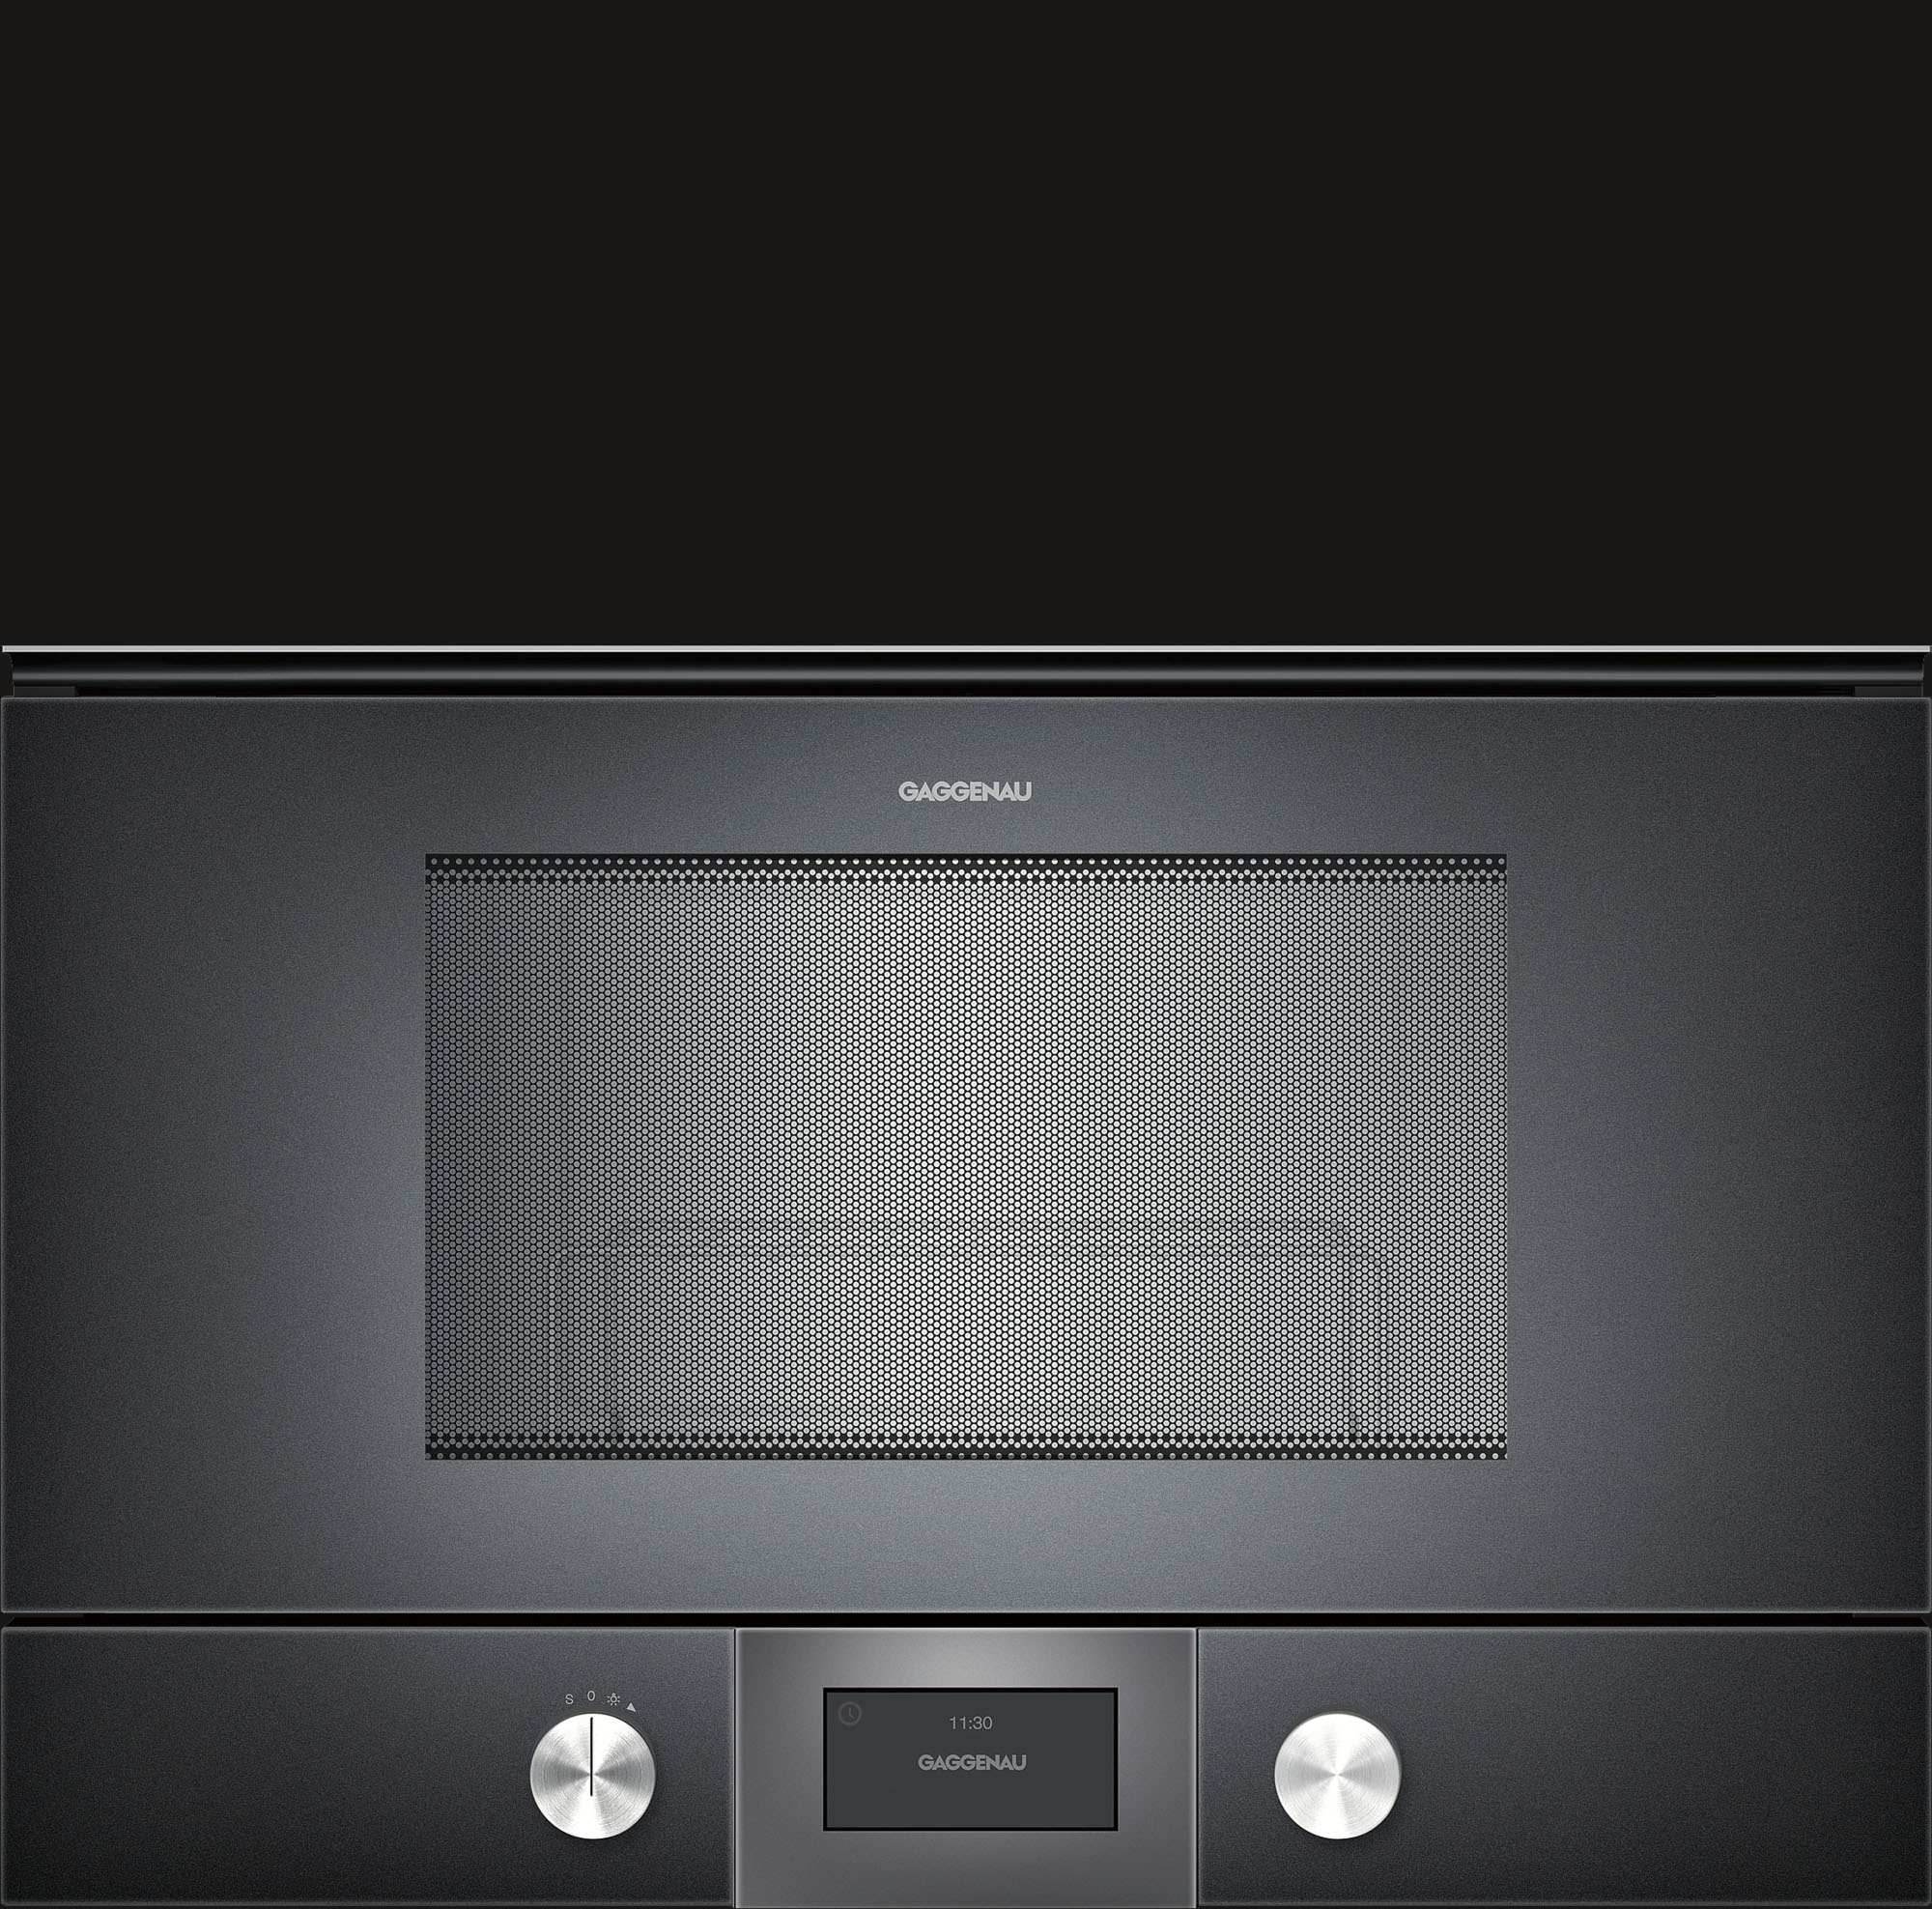 Как правильно выбрать микроволновую печь?